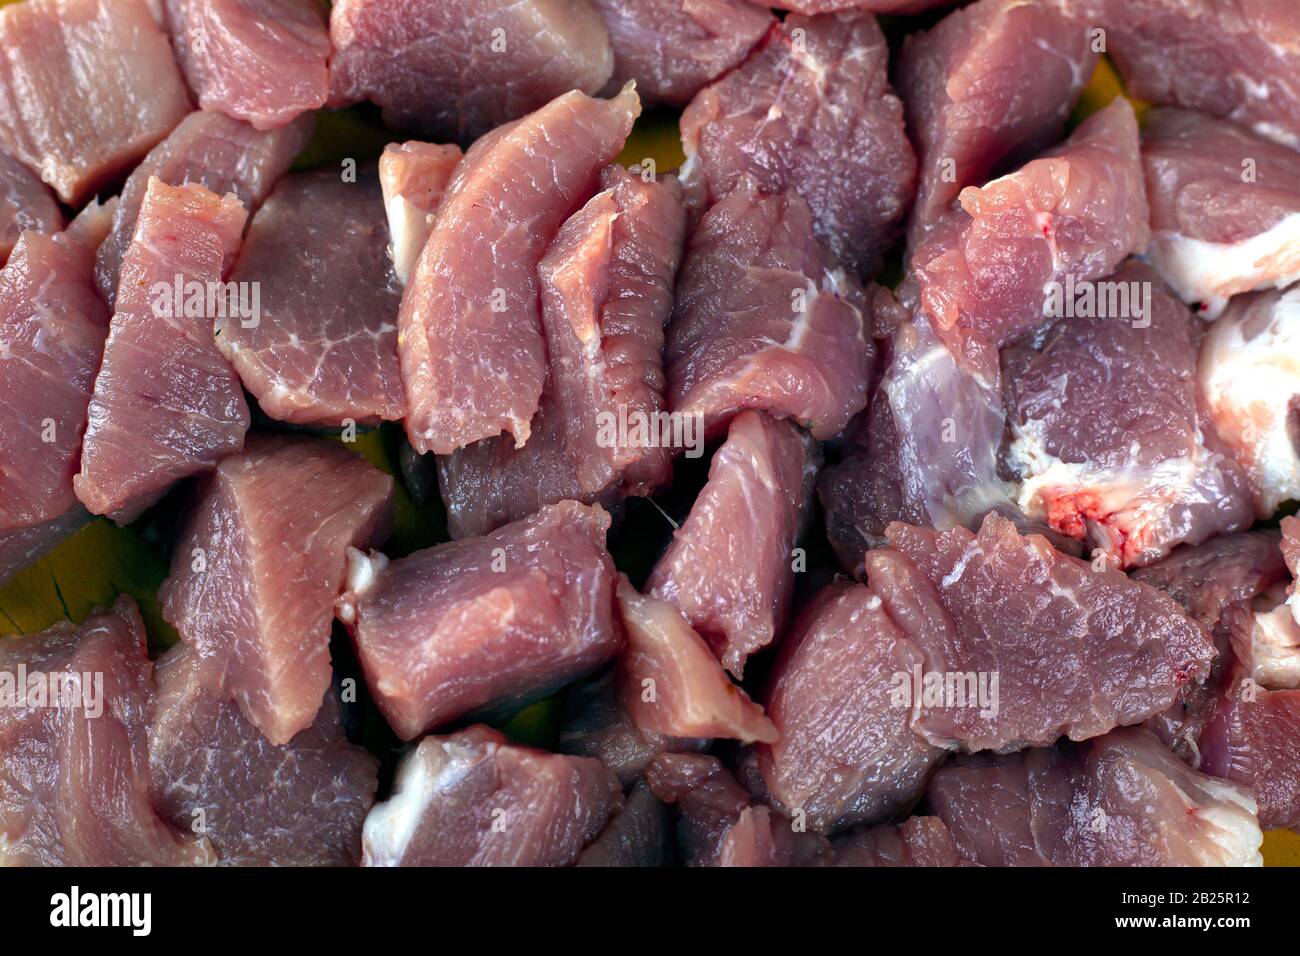 tranches de viande fraîche hachée de porc préparation pour la cuisine vue de dessus. Banque D'Images